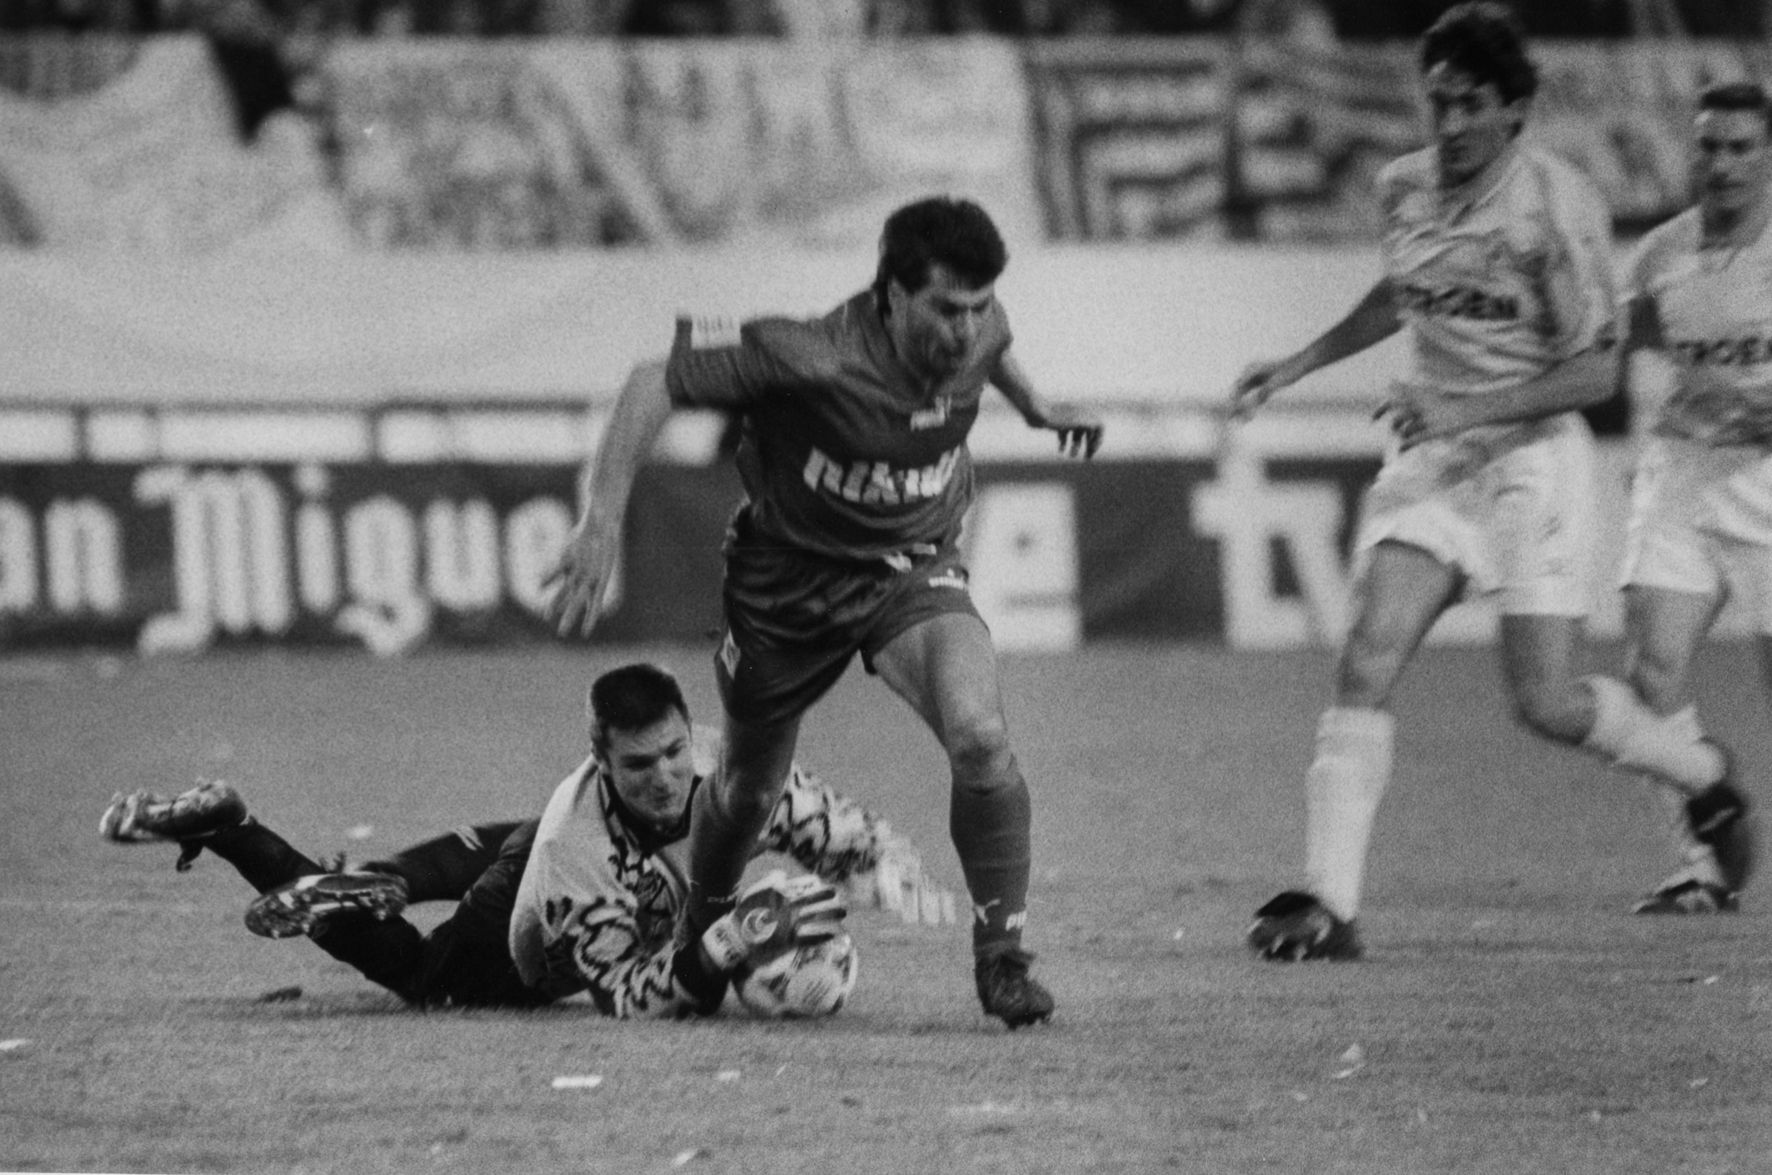 CA�IZARES 20-04-94 Magar Detiene un bal�n en la final de Copa, su gran espina con el Celta.jpg